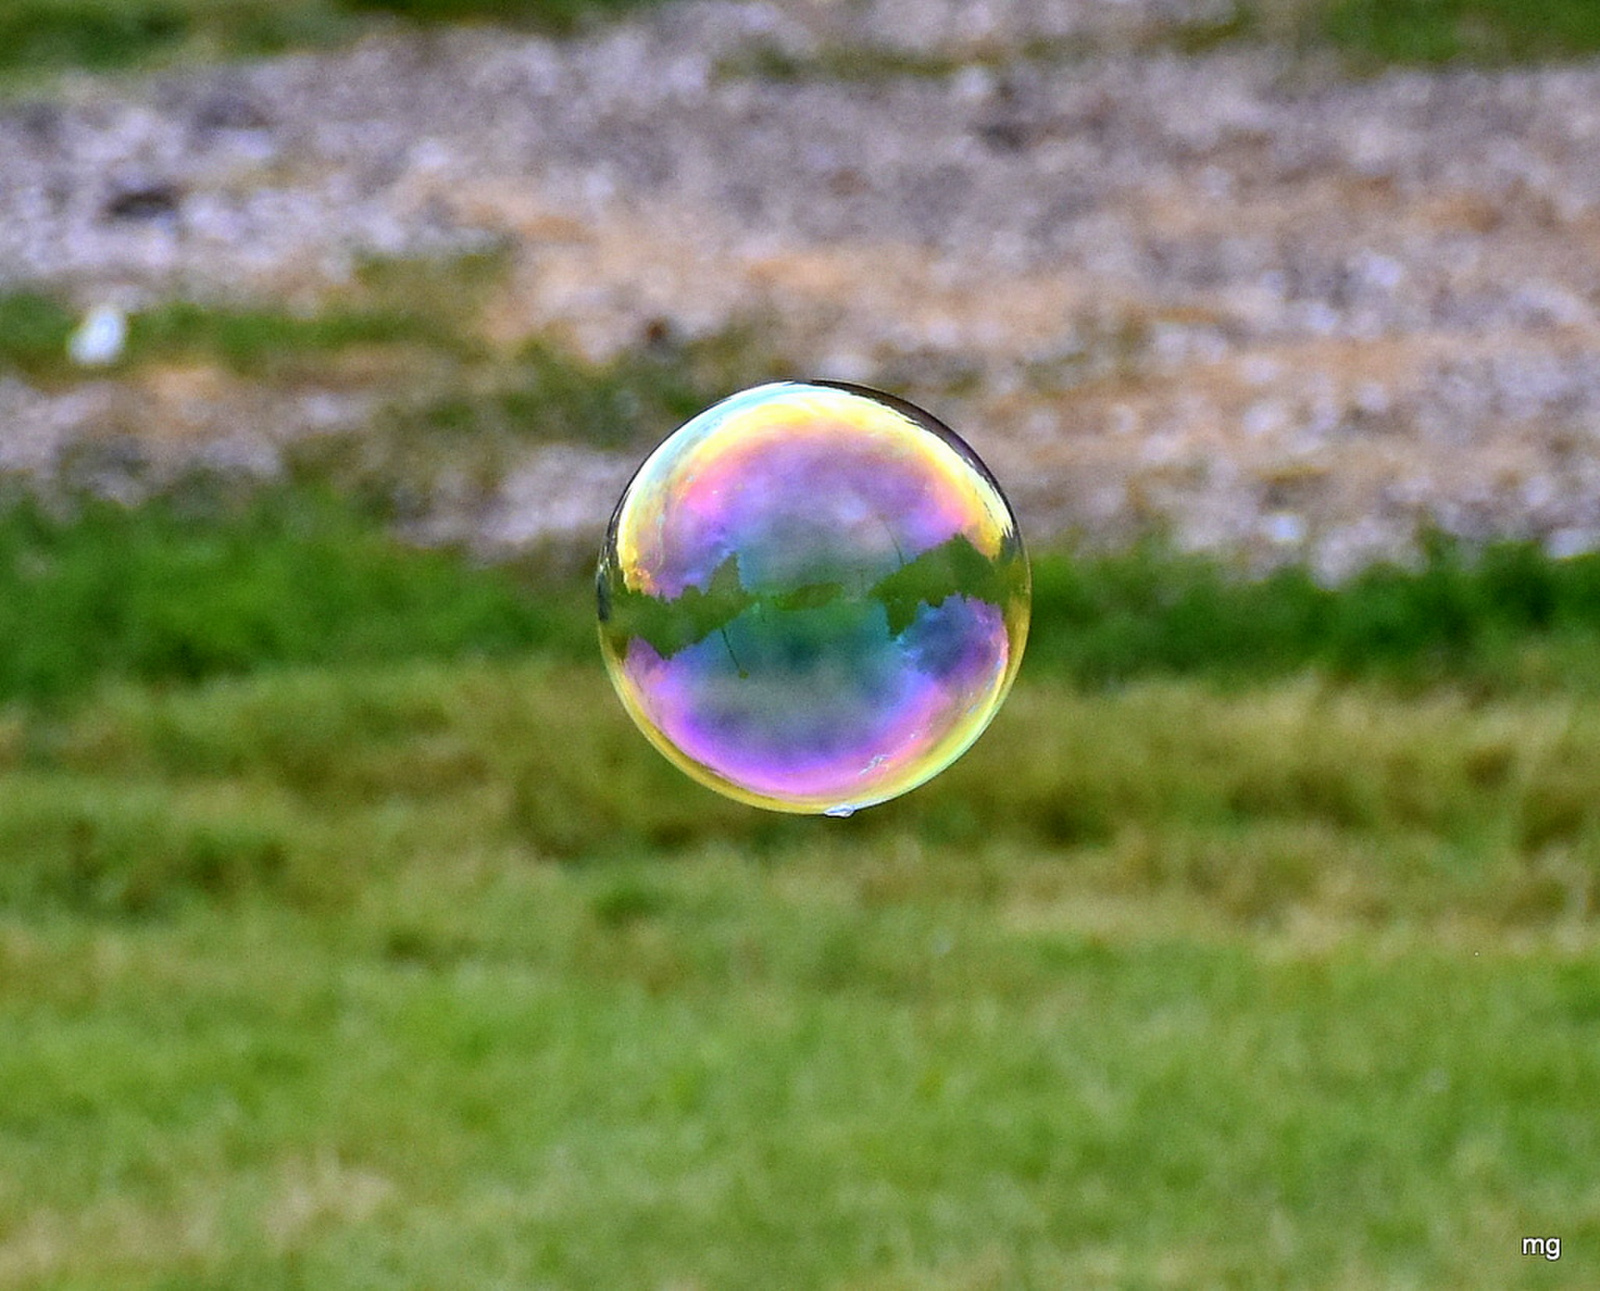 Még egy buborék